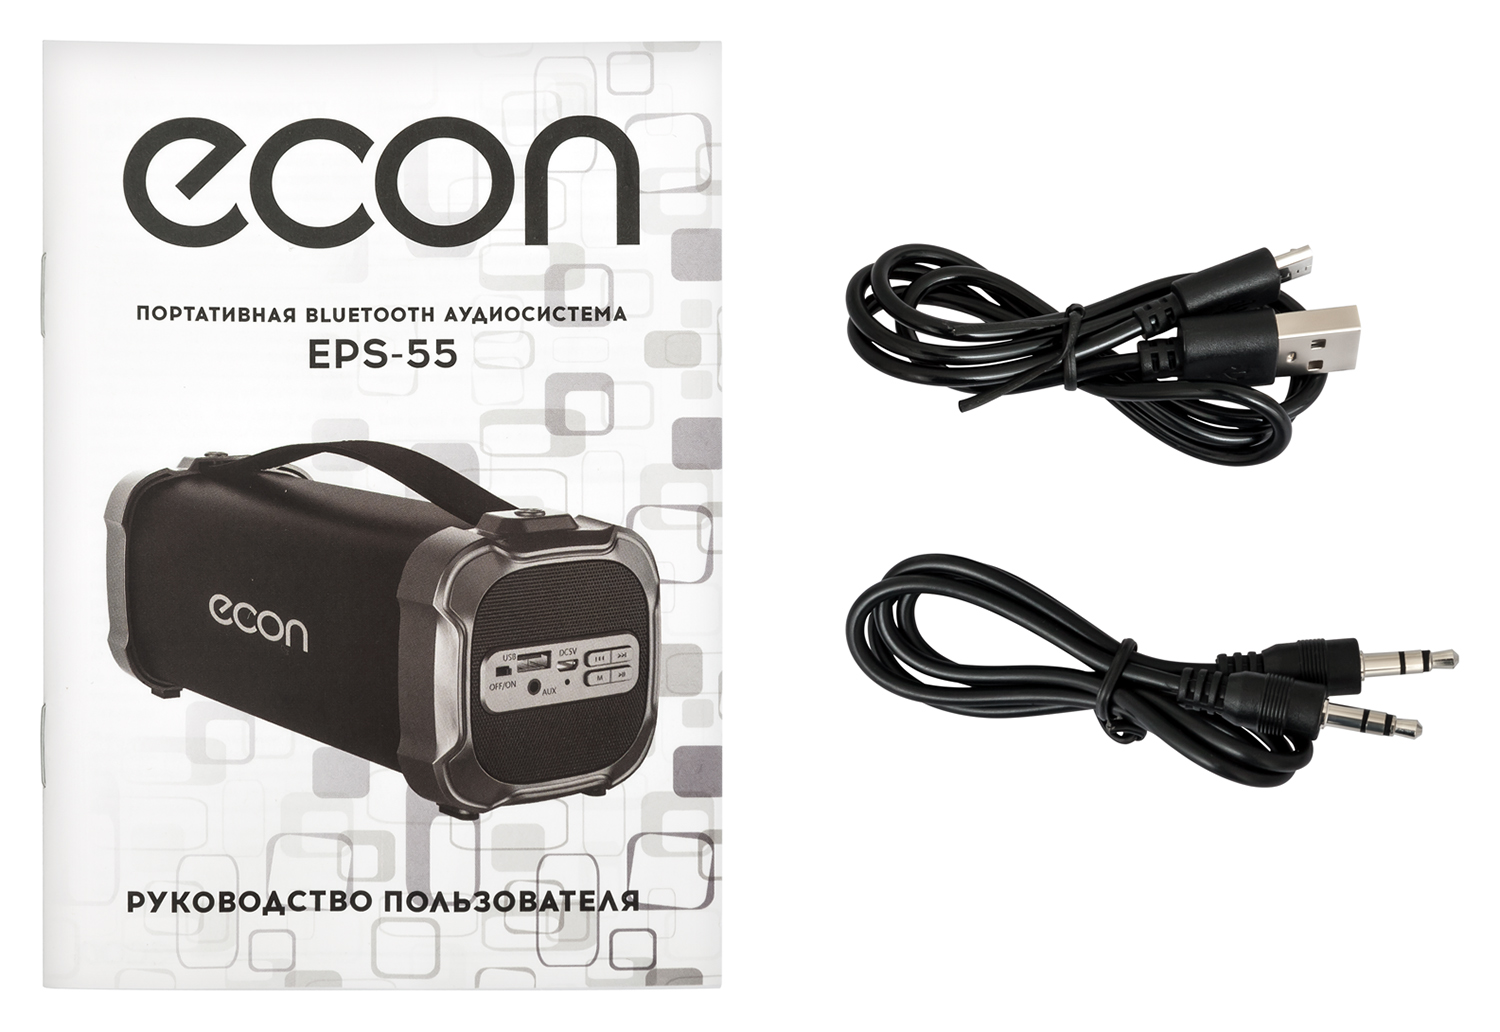 Картинка Портативная акустика ECON  EPS-55 по разумной цене купить в интернет магазине mall.su